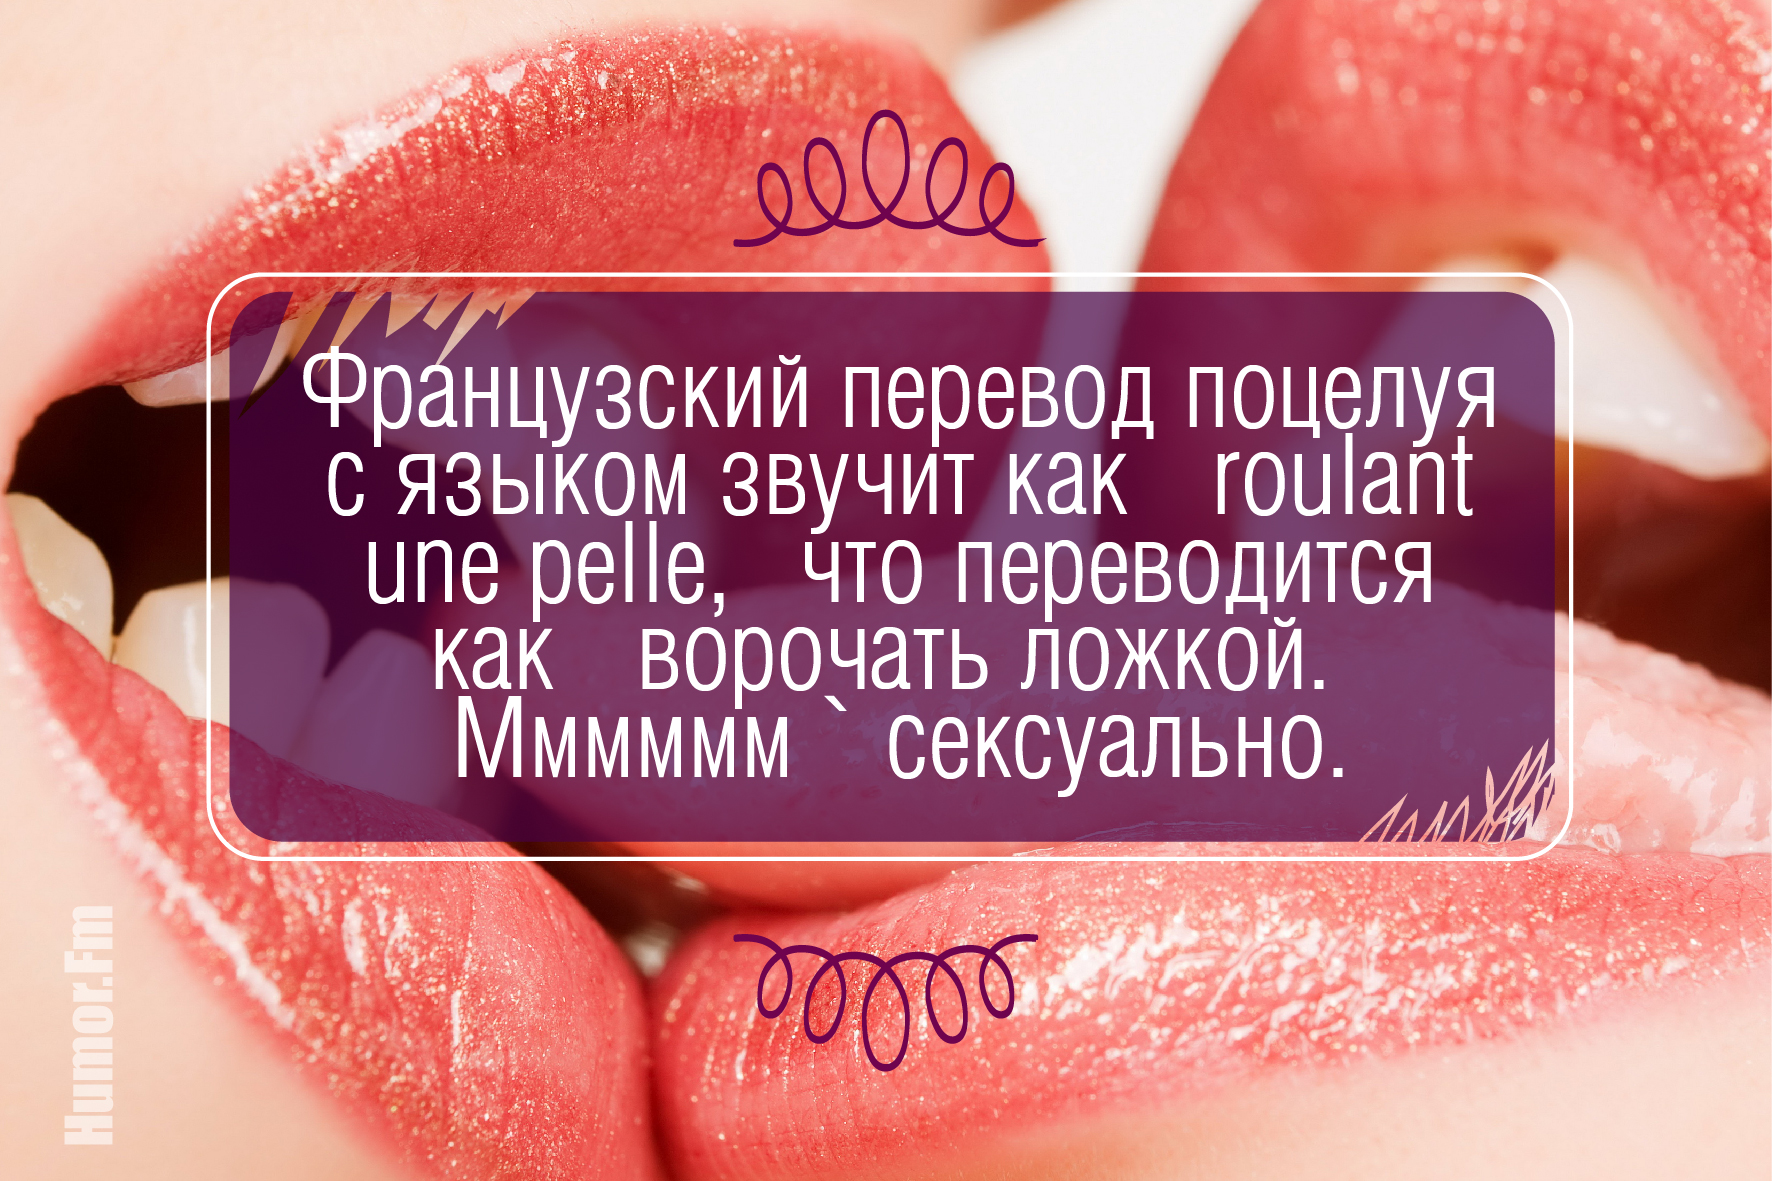 Молодой и красивый перевод. Красивые фразы про губы. Факты о поцелуях в губы. Поцелуй на здоровье.